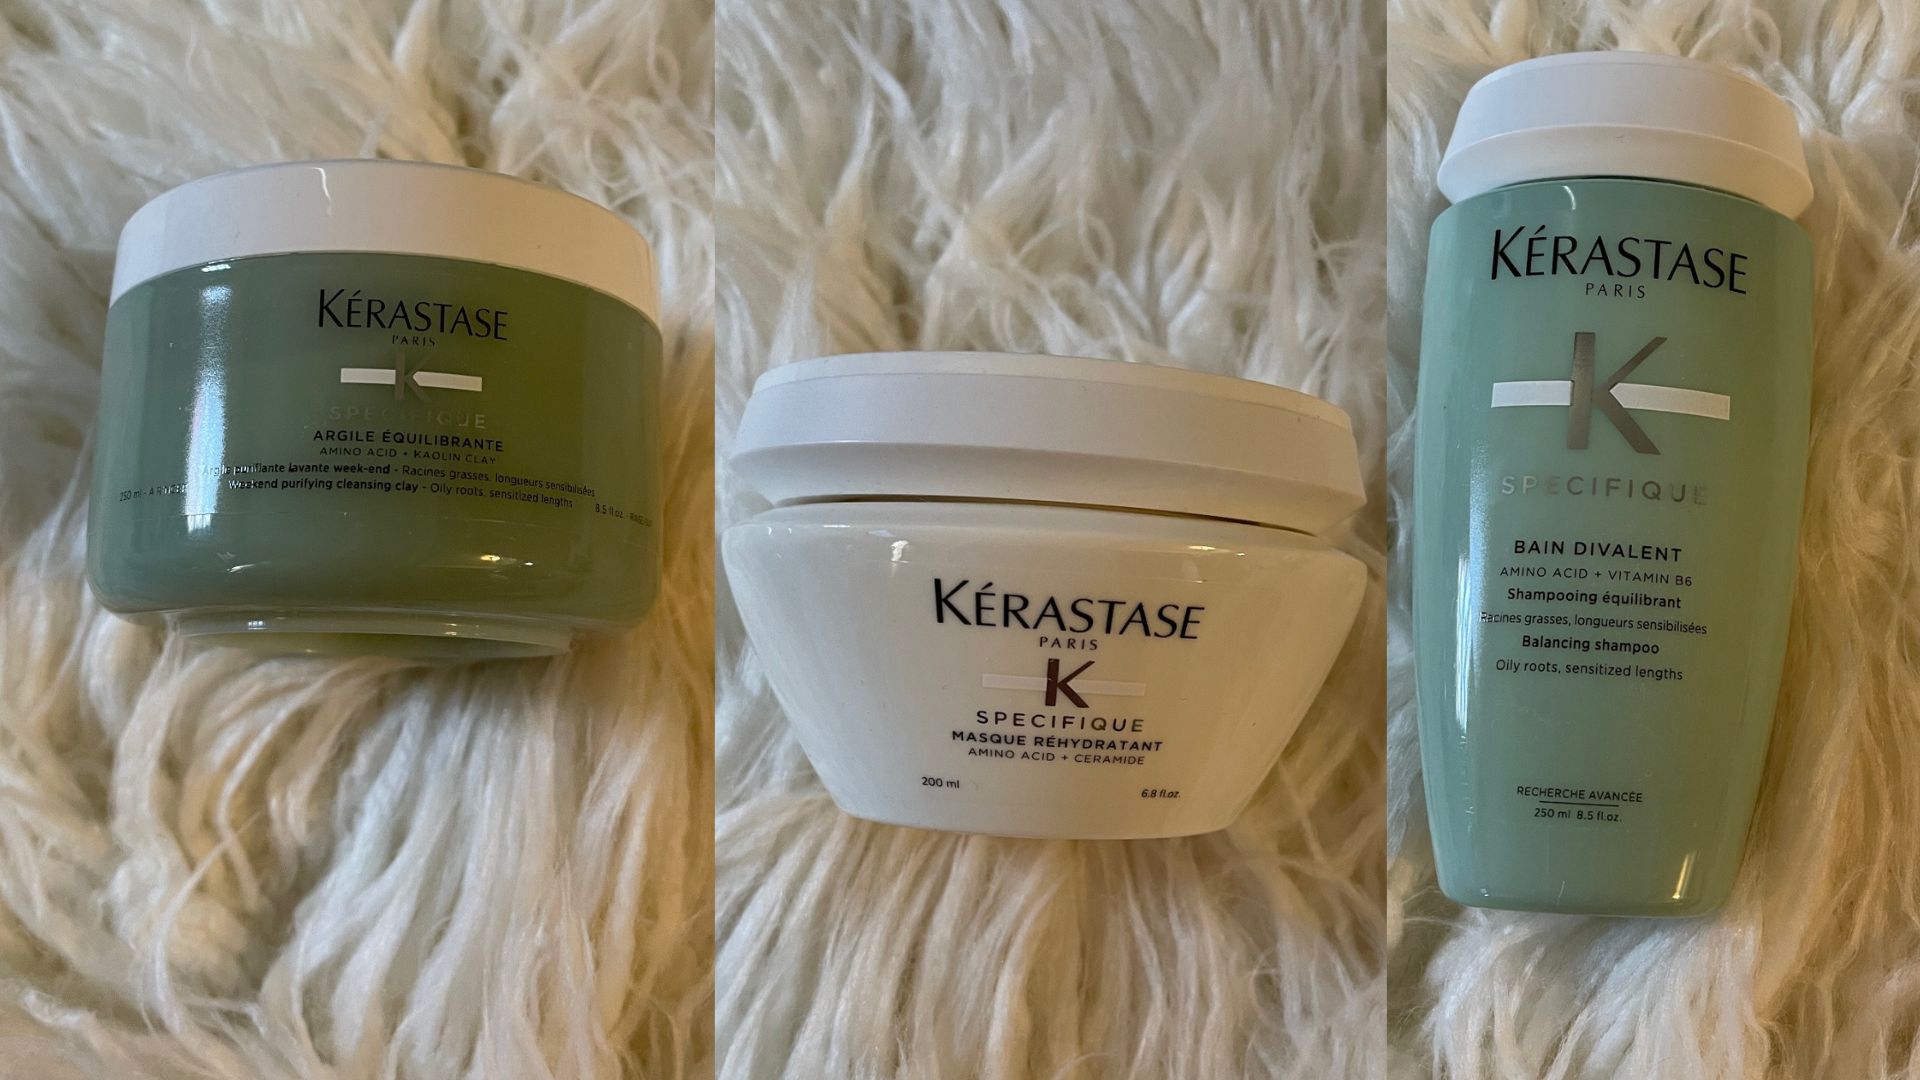 Vælg visdom brud Kerastase Specifique Hair Care | BeautyStat.com